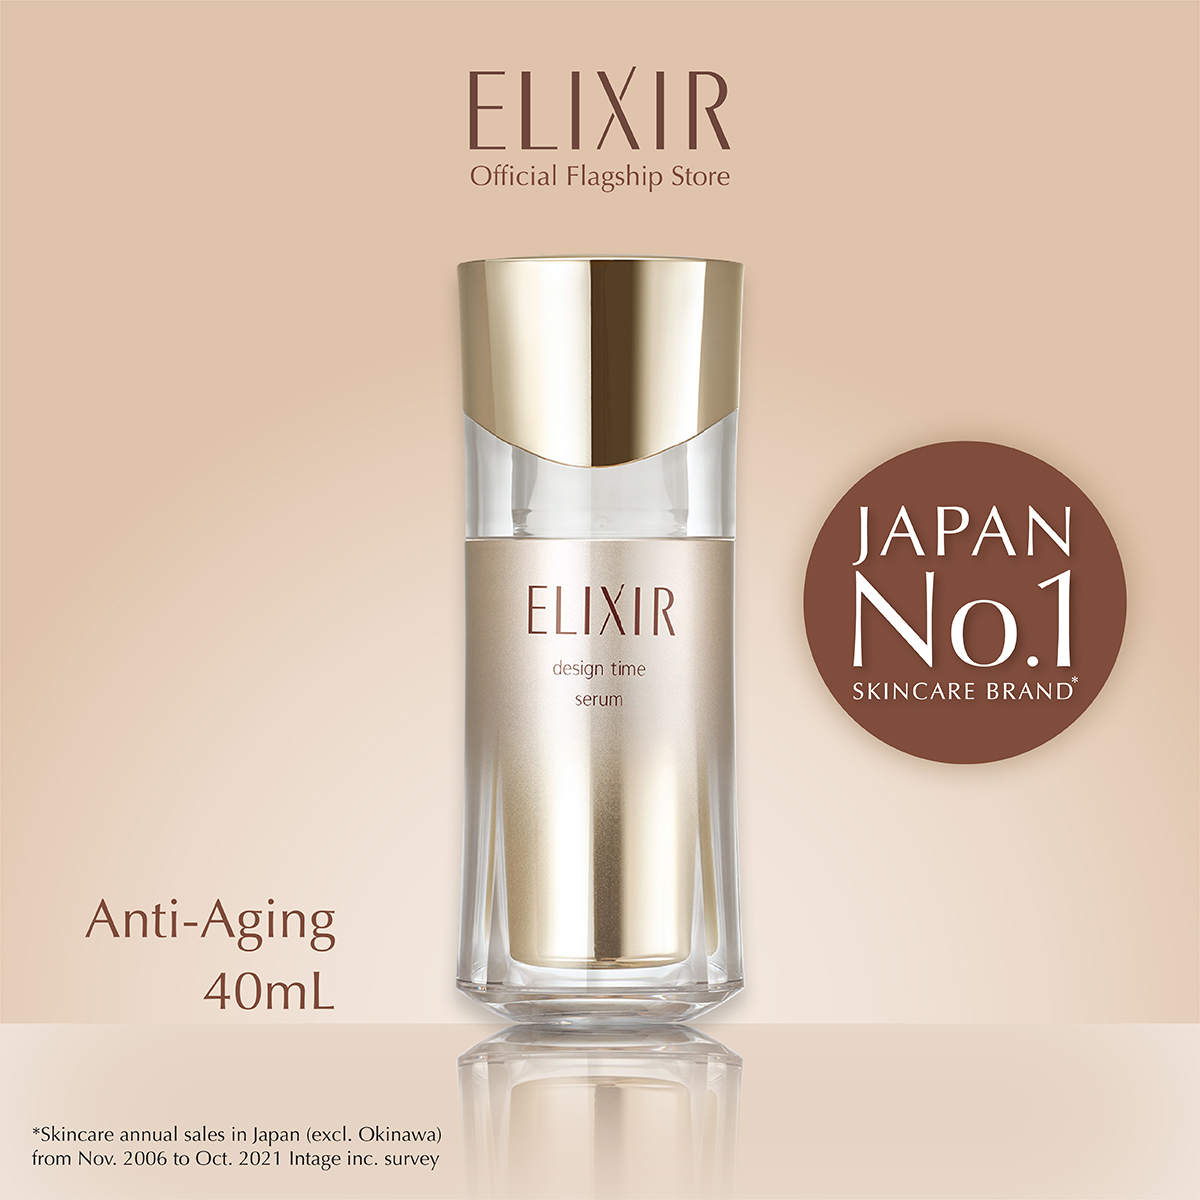 Elixir ราคาถูก ซื้อออนไลน์ที่ - ม.ค. 2024